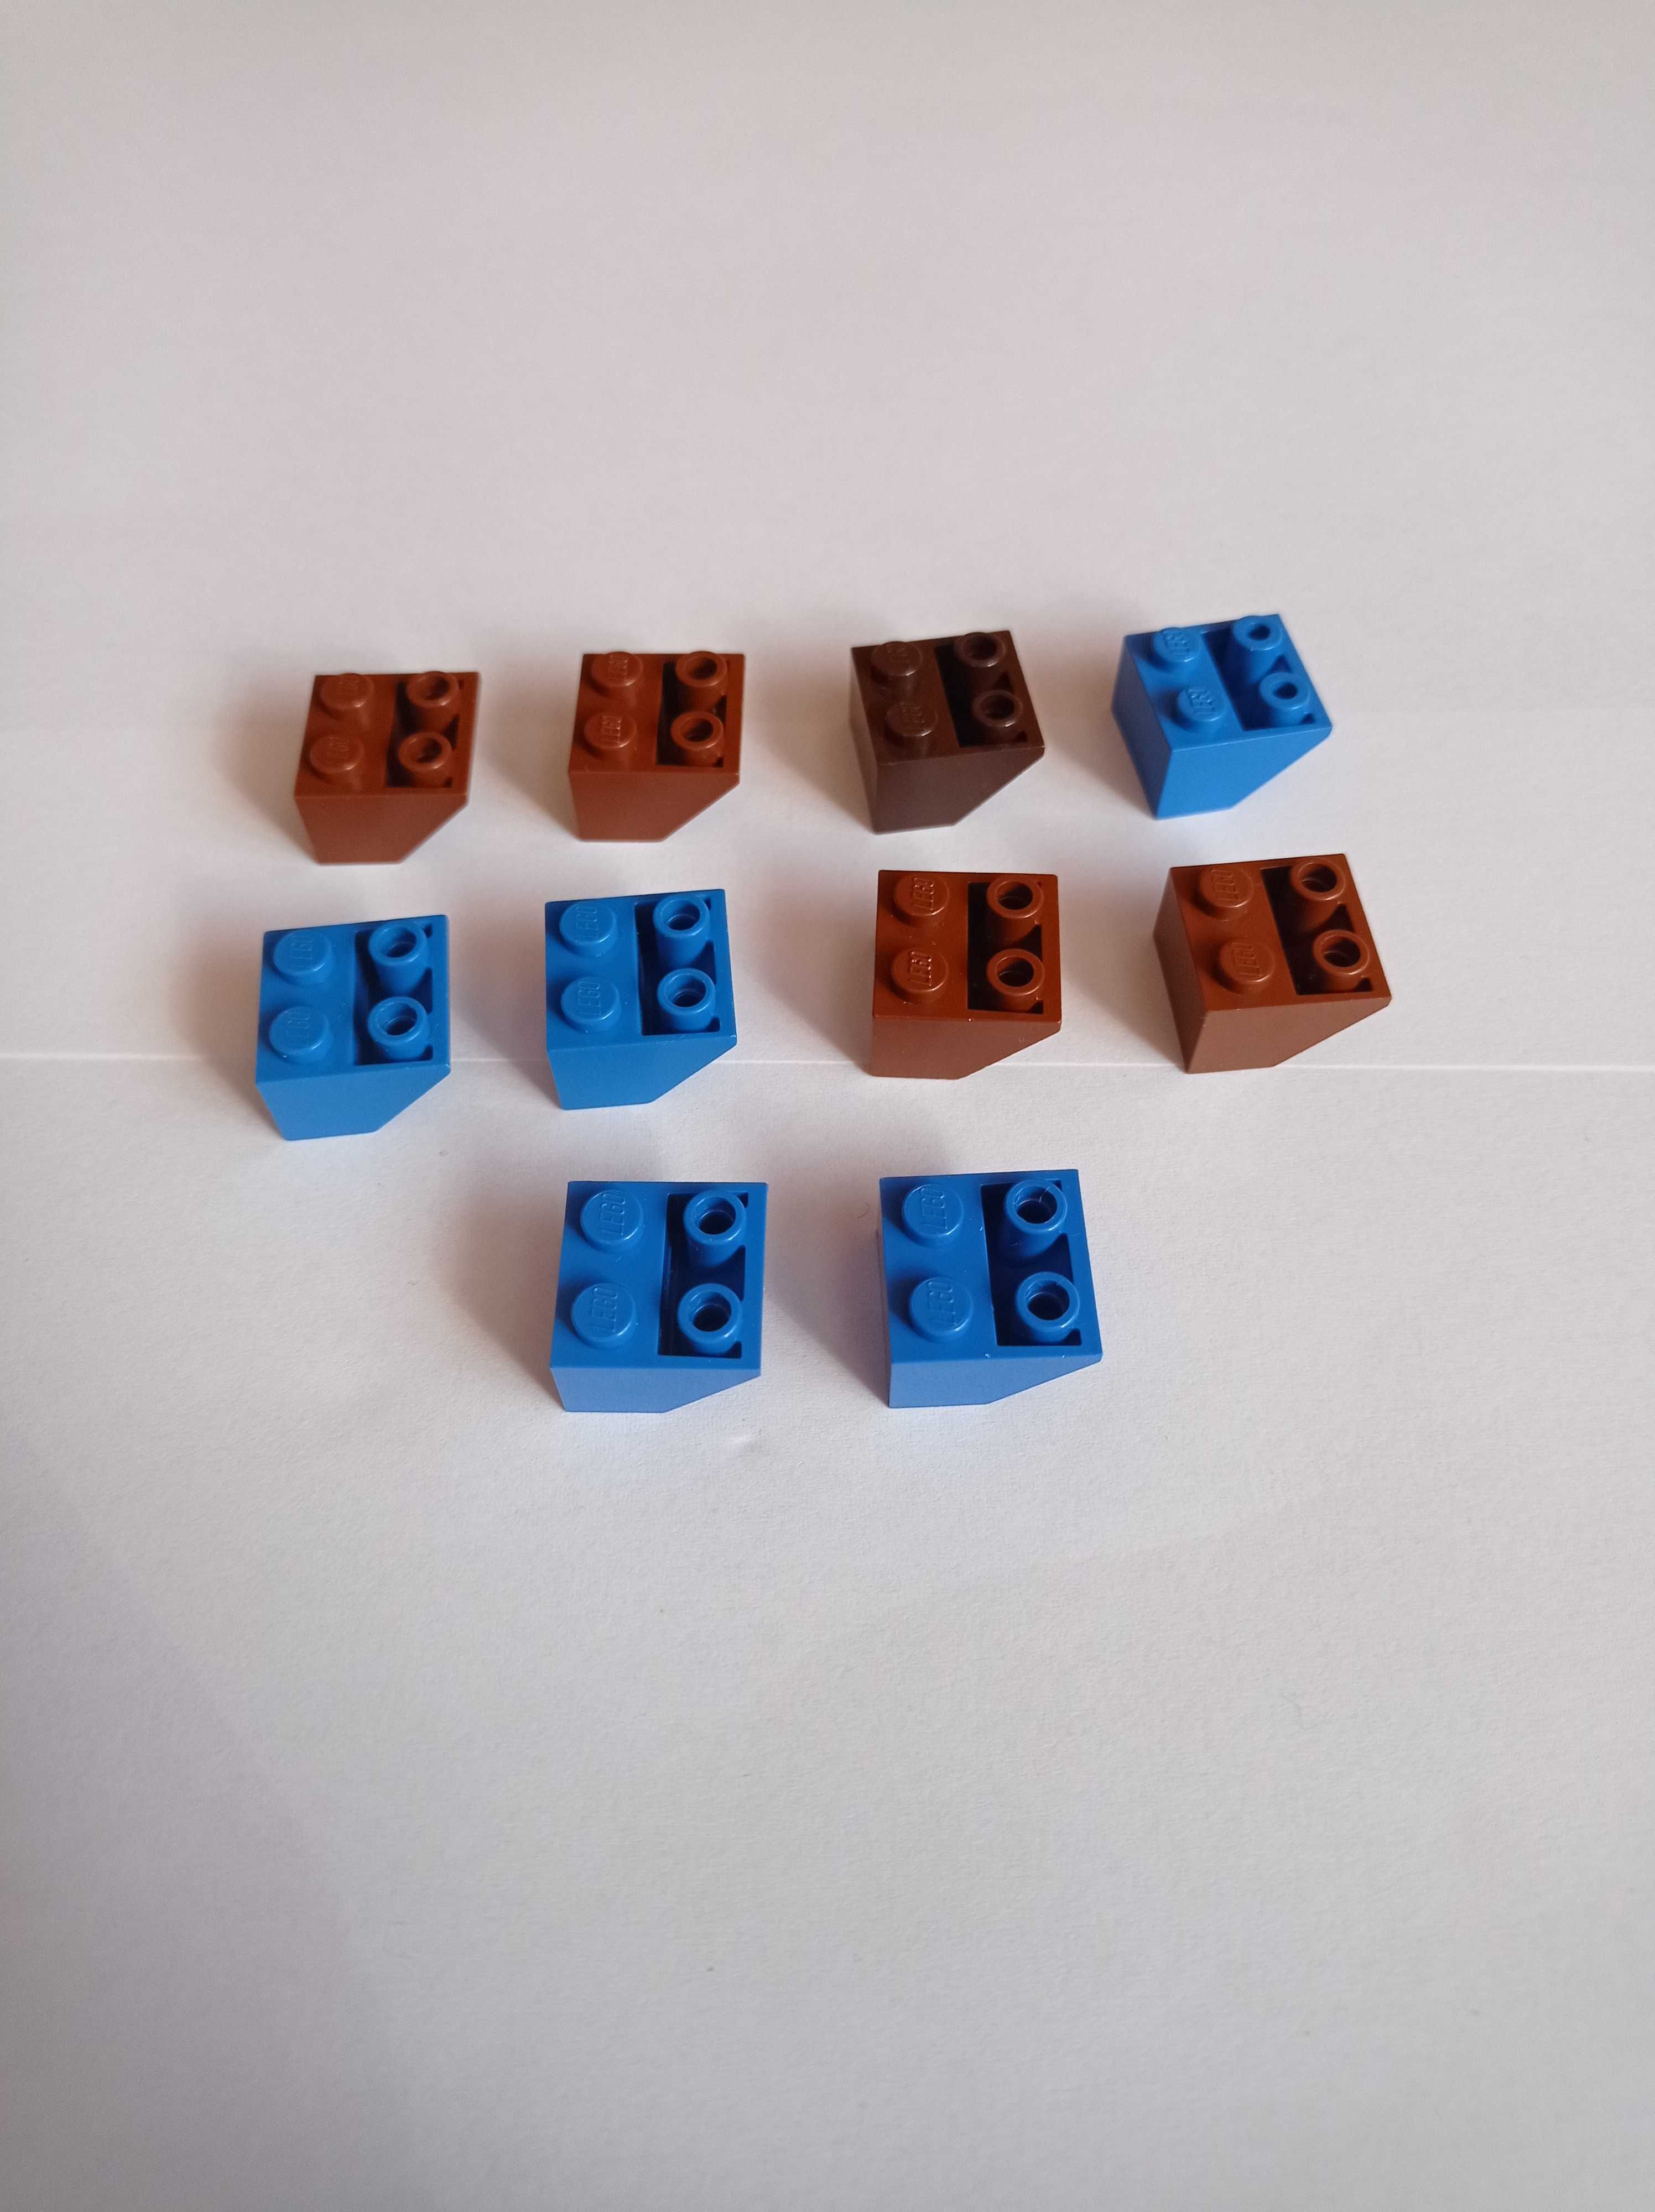 Klocki Lego, 3660, brązowy i niebieski